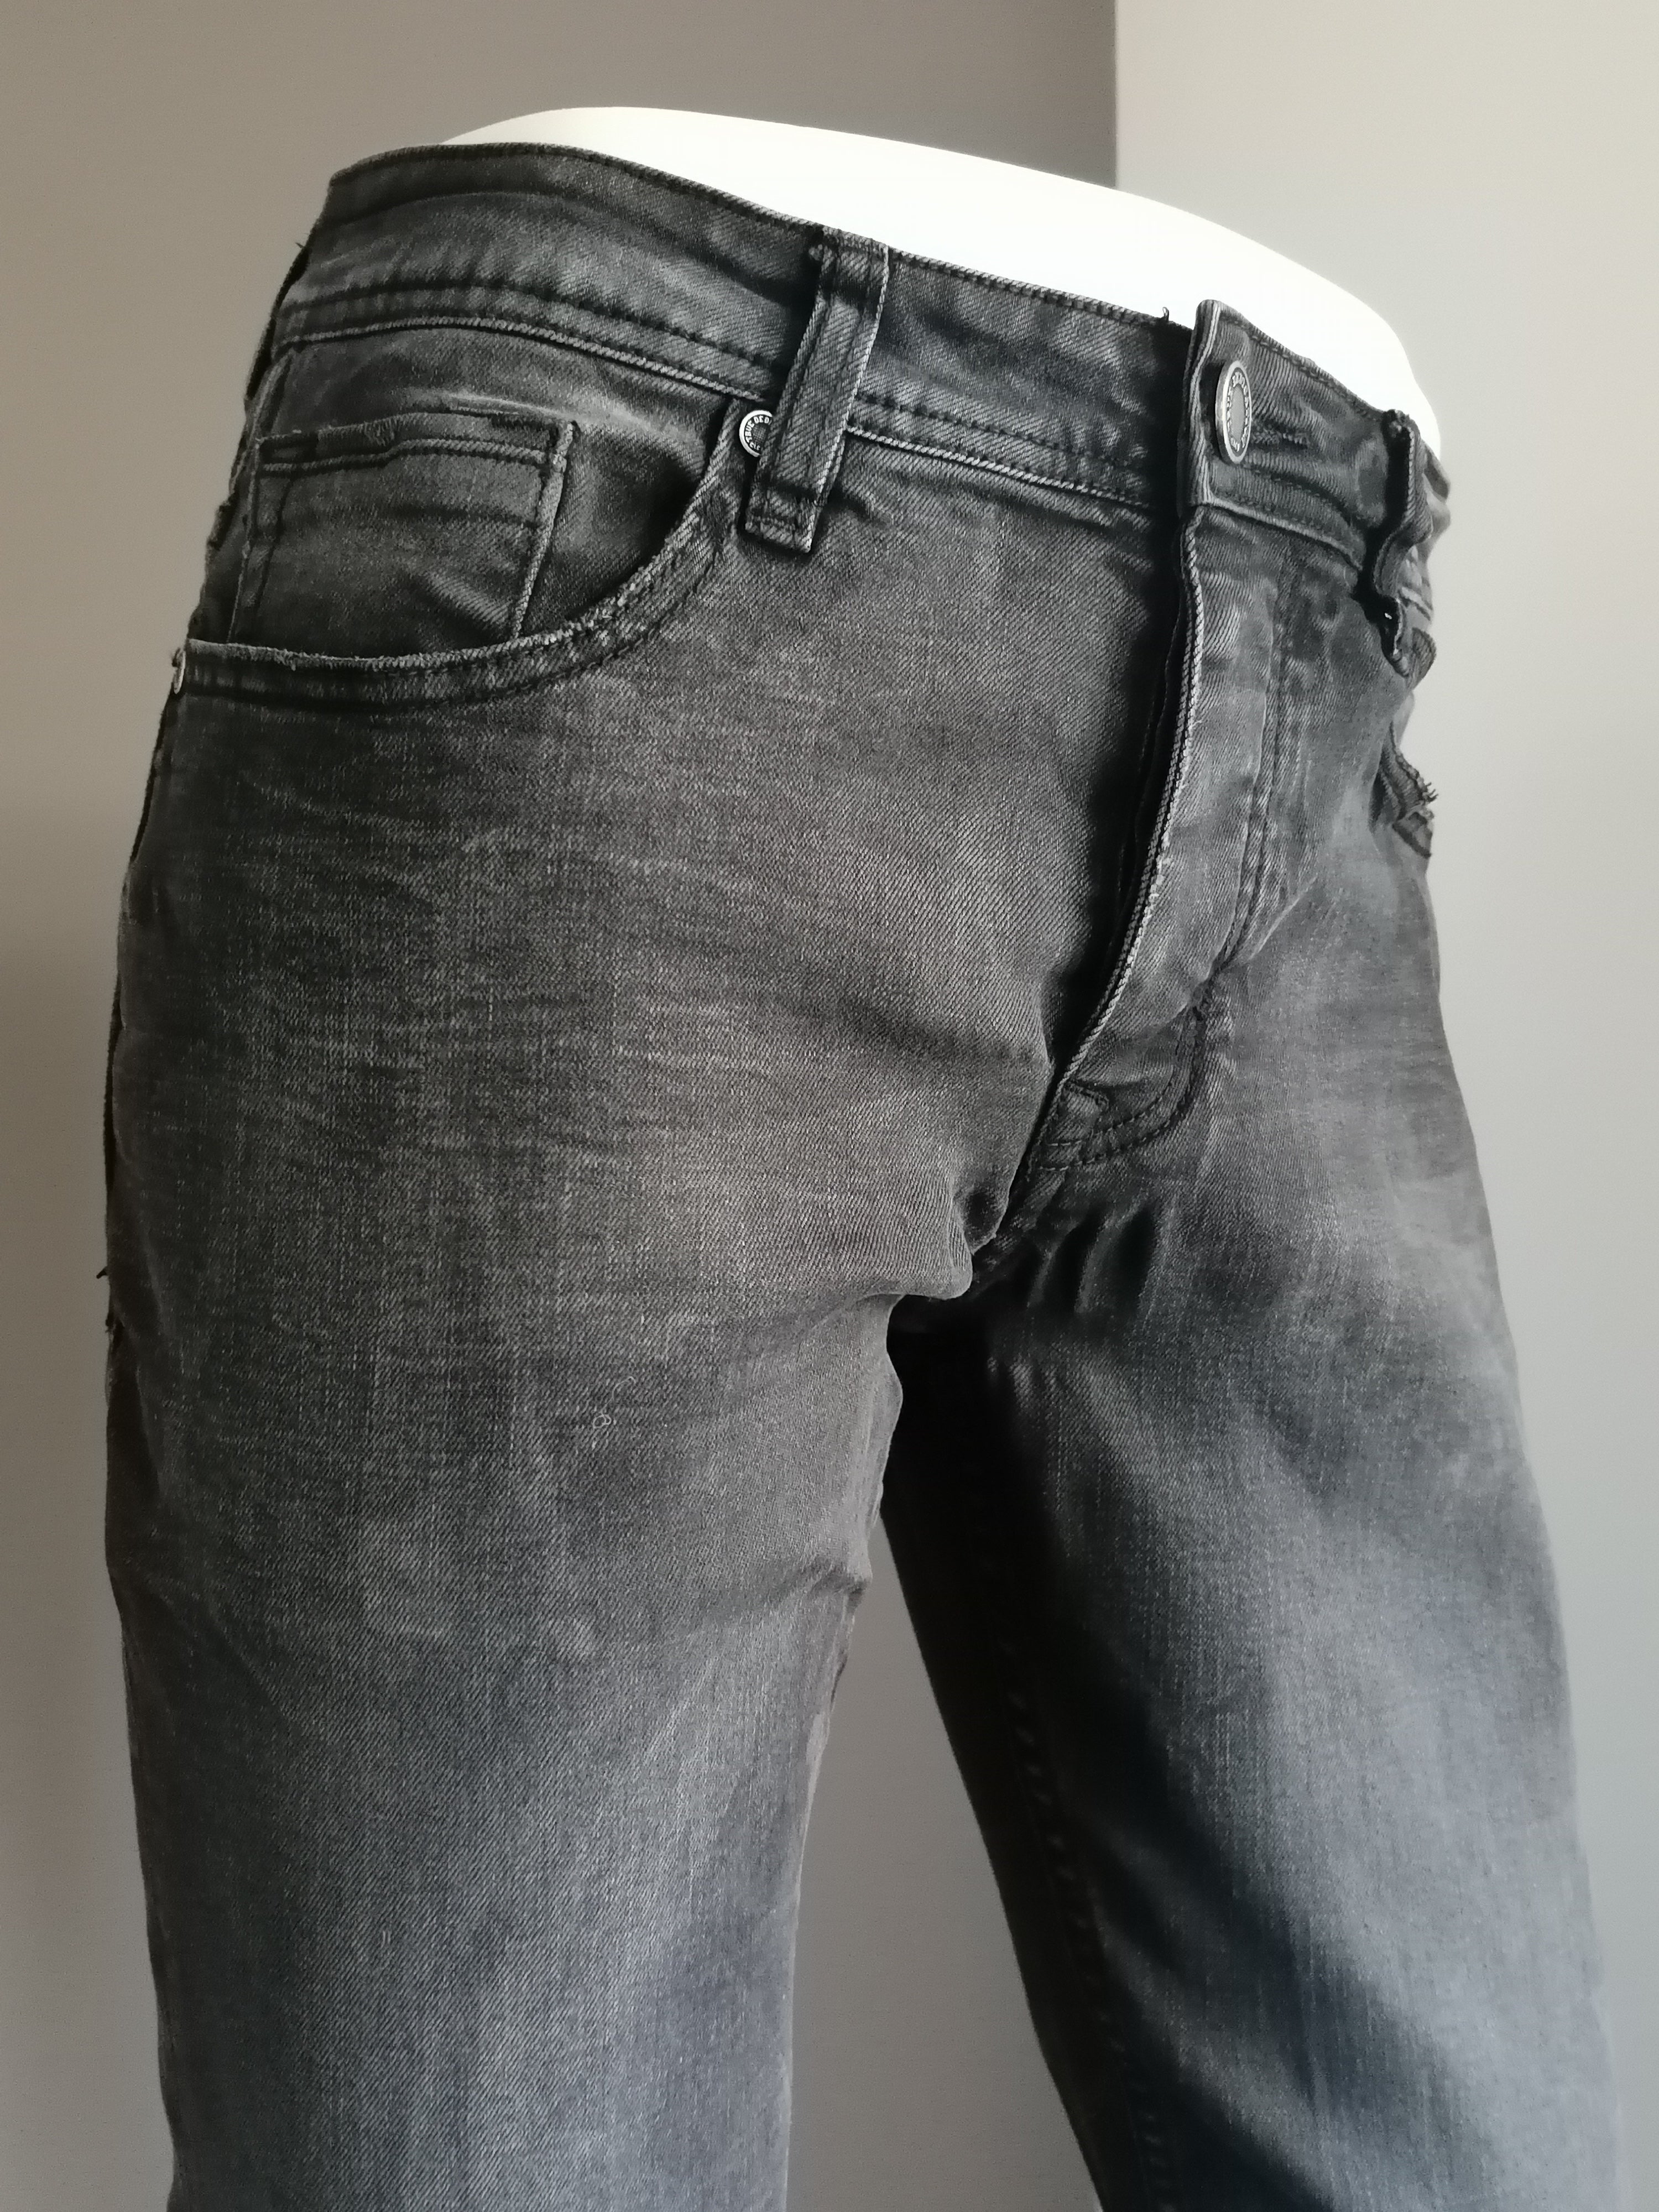 Belichamen procedure Welsprekend Jeans Coolcat. Color negro. Tamaño W30 - L32. Regular "yoe". Estirar. |  EcoGents